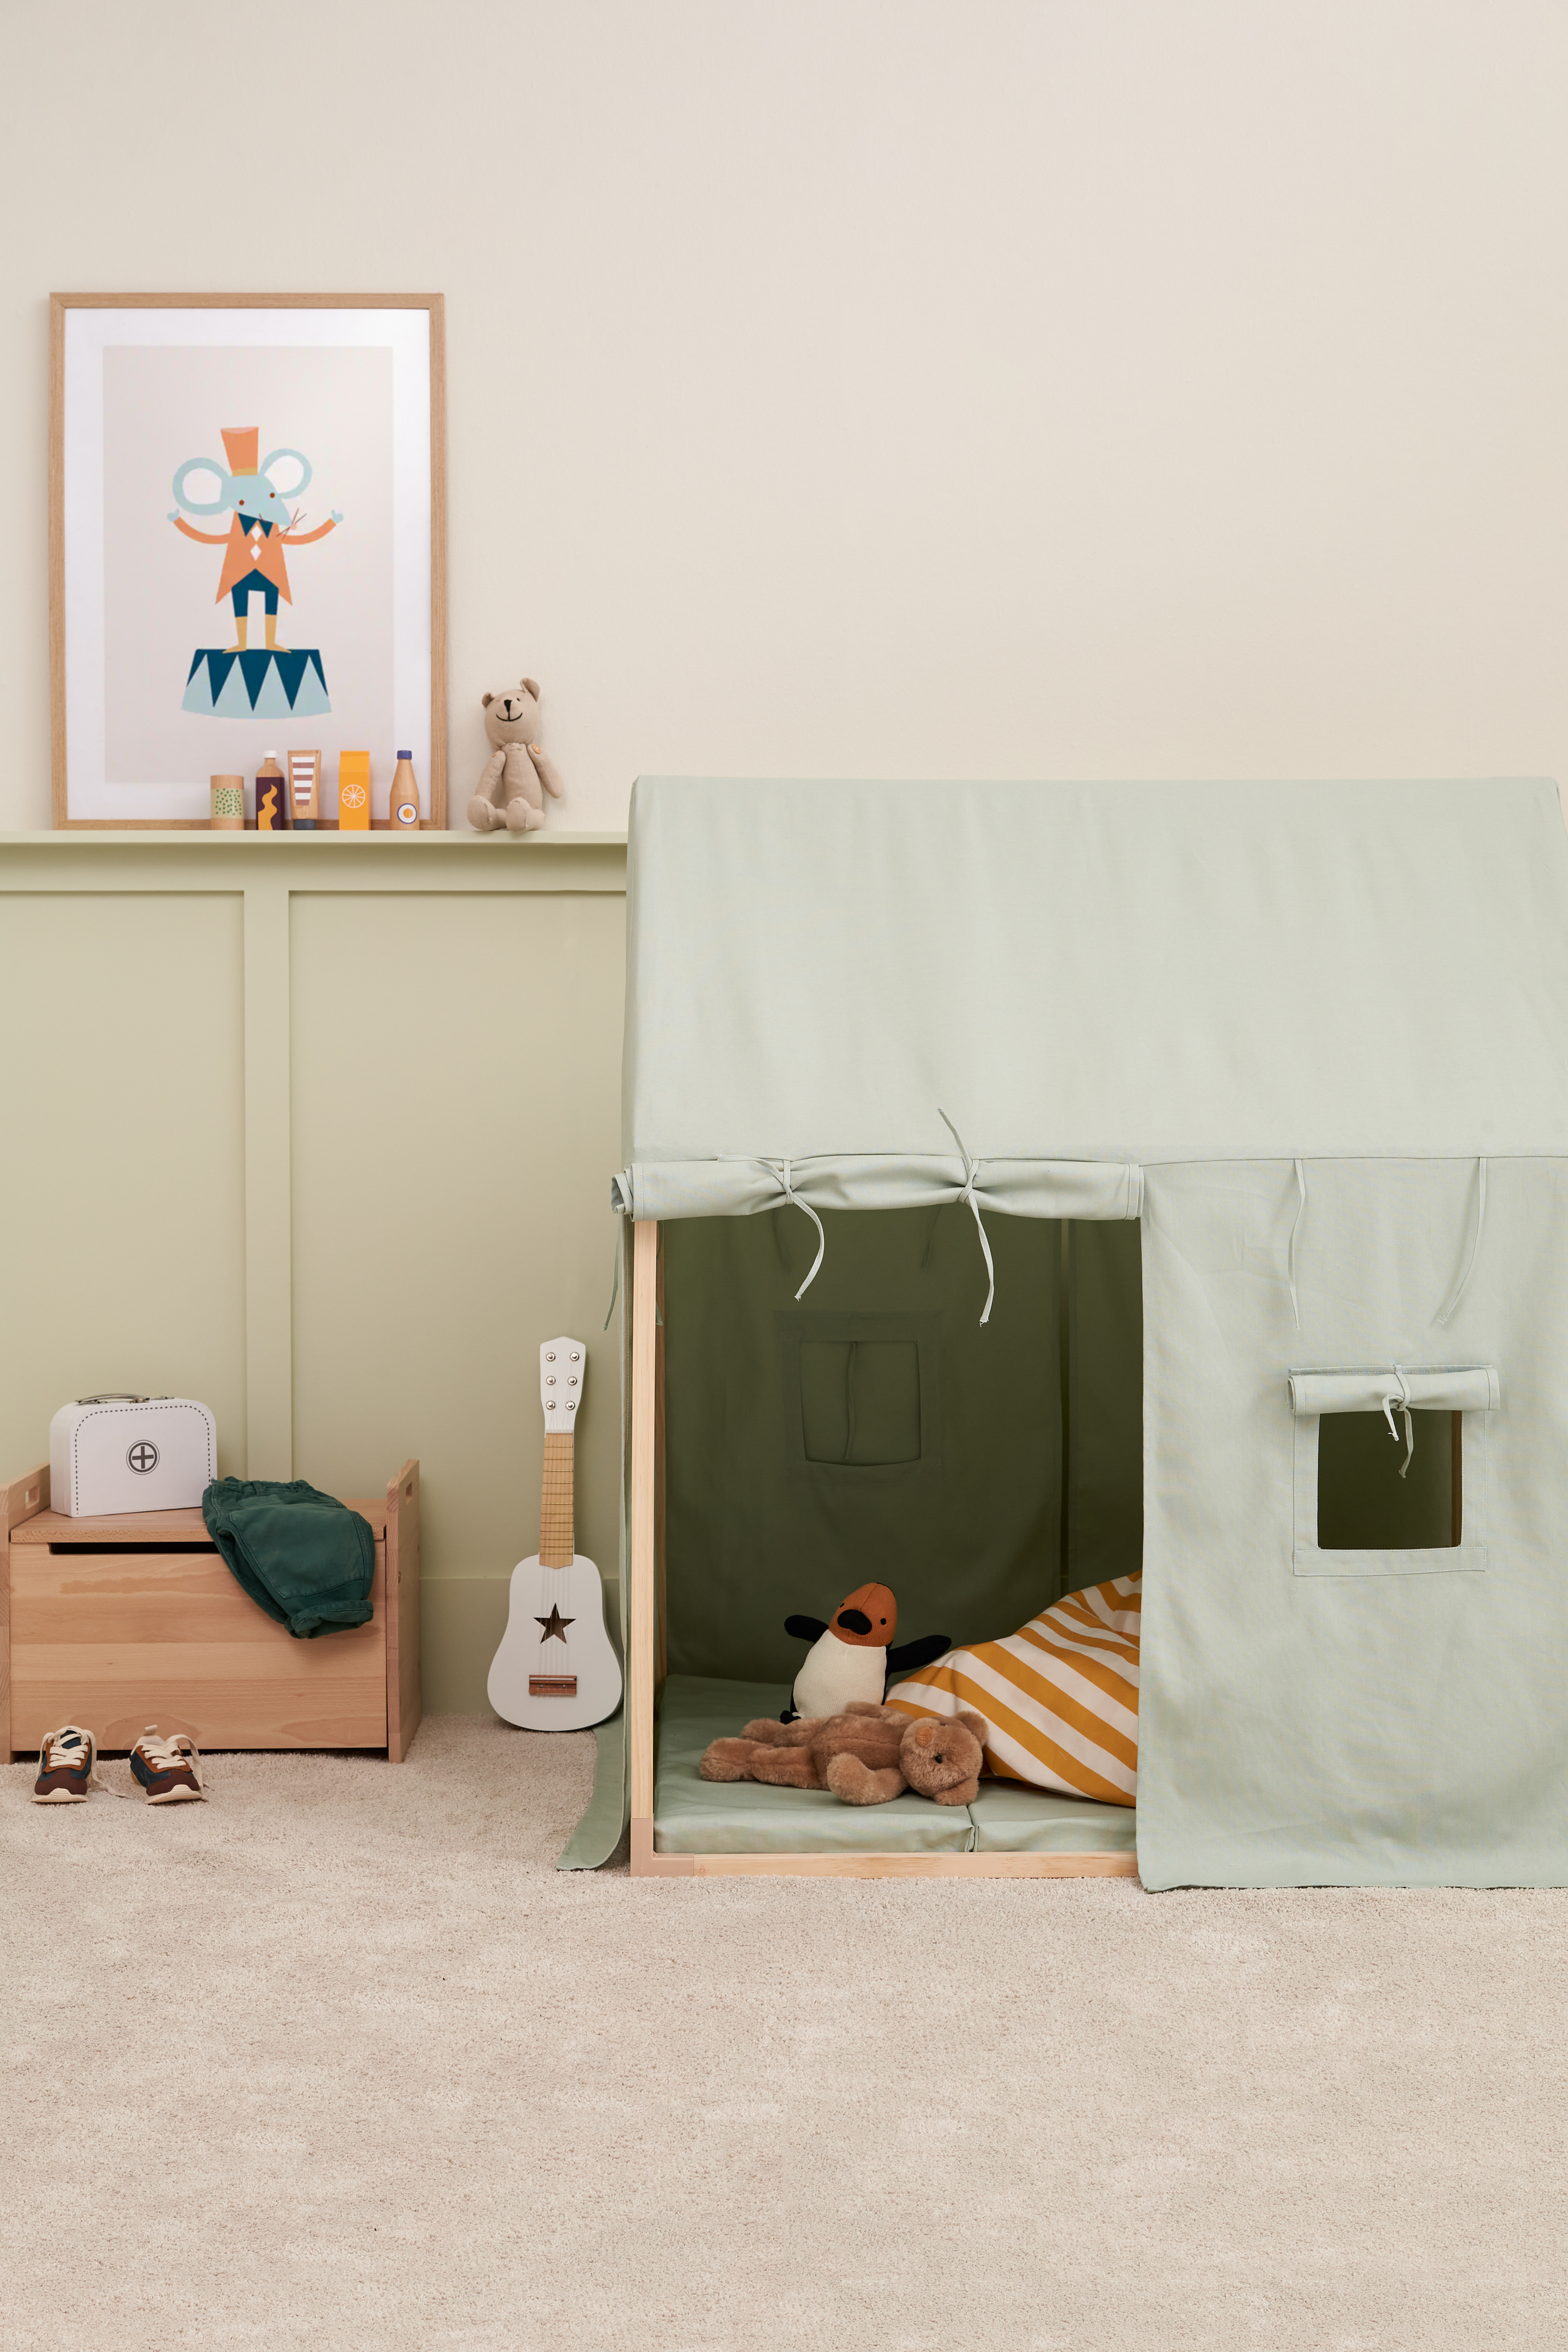 Kids Concept® Tente de jeu, crème beige 110x80 cm